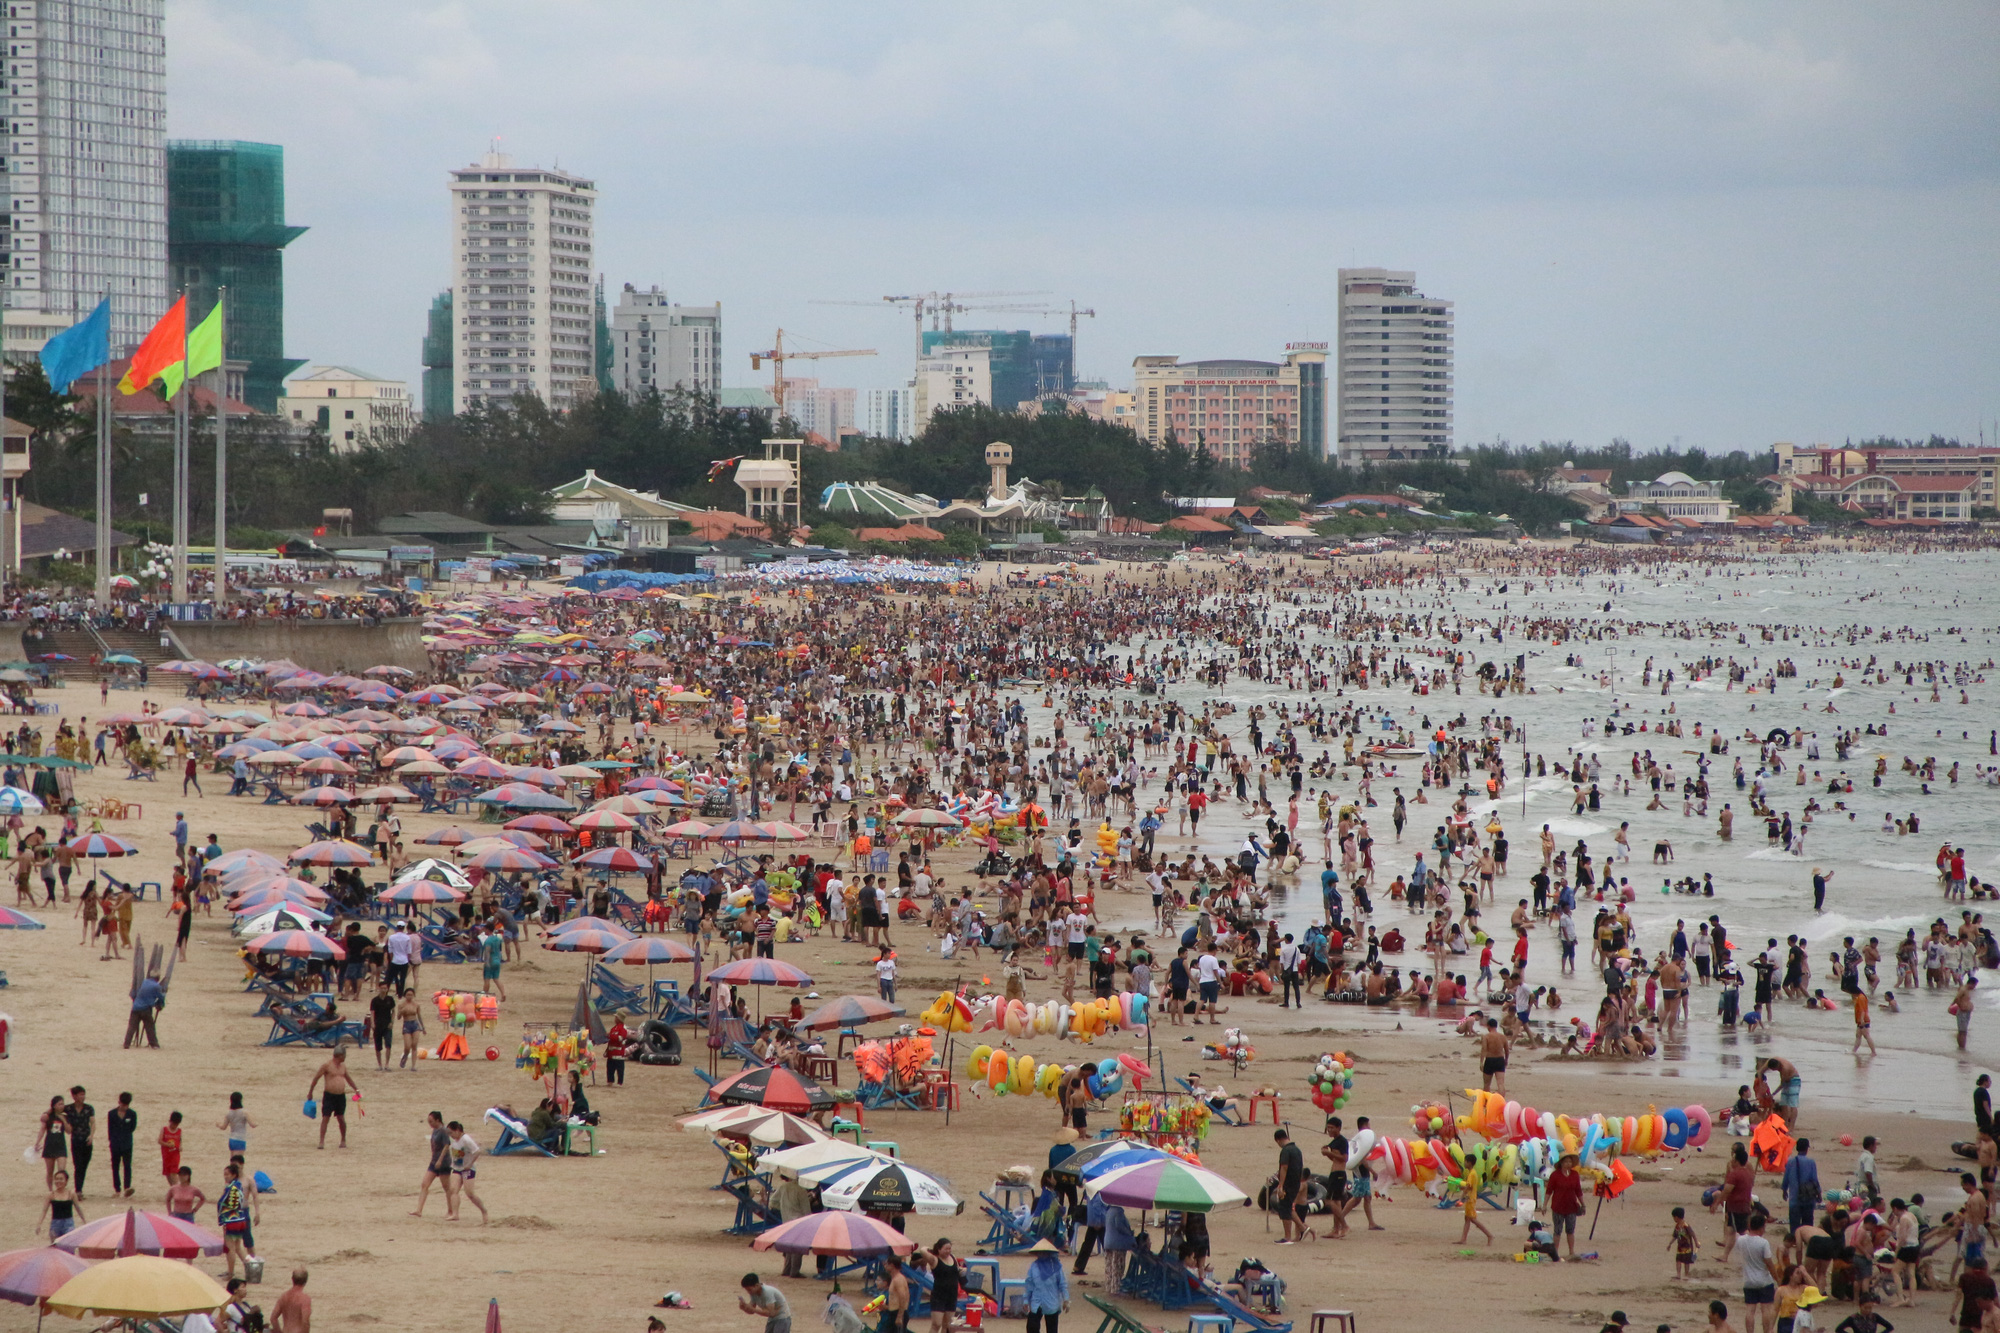 Bà Rịa-Vũng Tàu là một trong những điểm đến nổi tiếng của Việt Nam với những bãi biển đẹp như cổ tích, khí hậu ôn hòa và nhiều danh thắng nổi tiếng. Xem hình ảnh Bà Rịa-Vũng Tàu để cùng ngắm nhìn những cảnh đẹp không thể tả được.